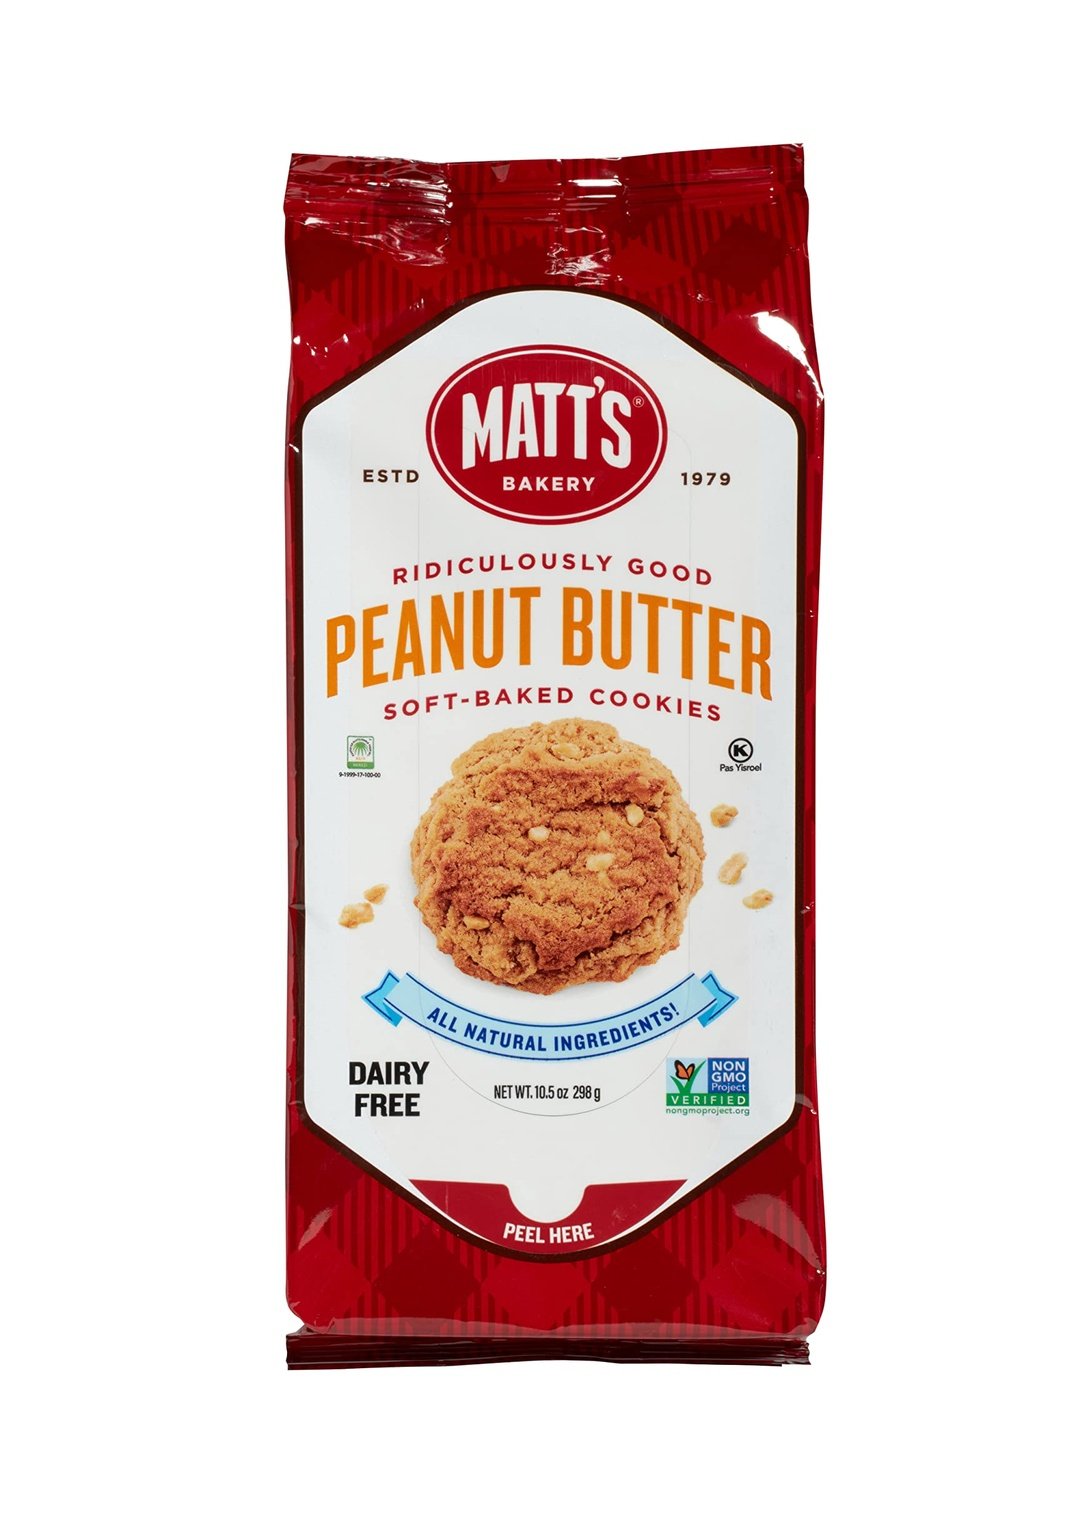 MATT'S COOKIES Peanut Butter Soft-Baked Cookies